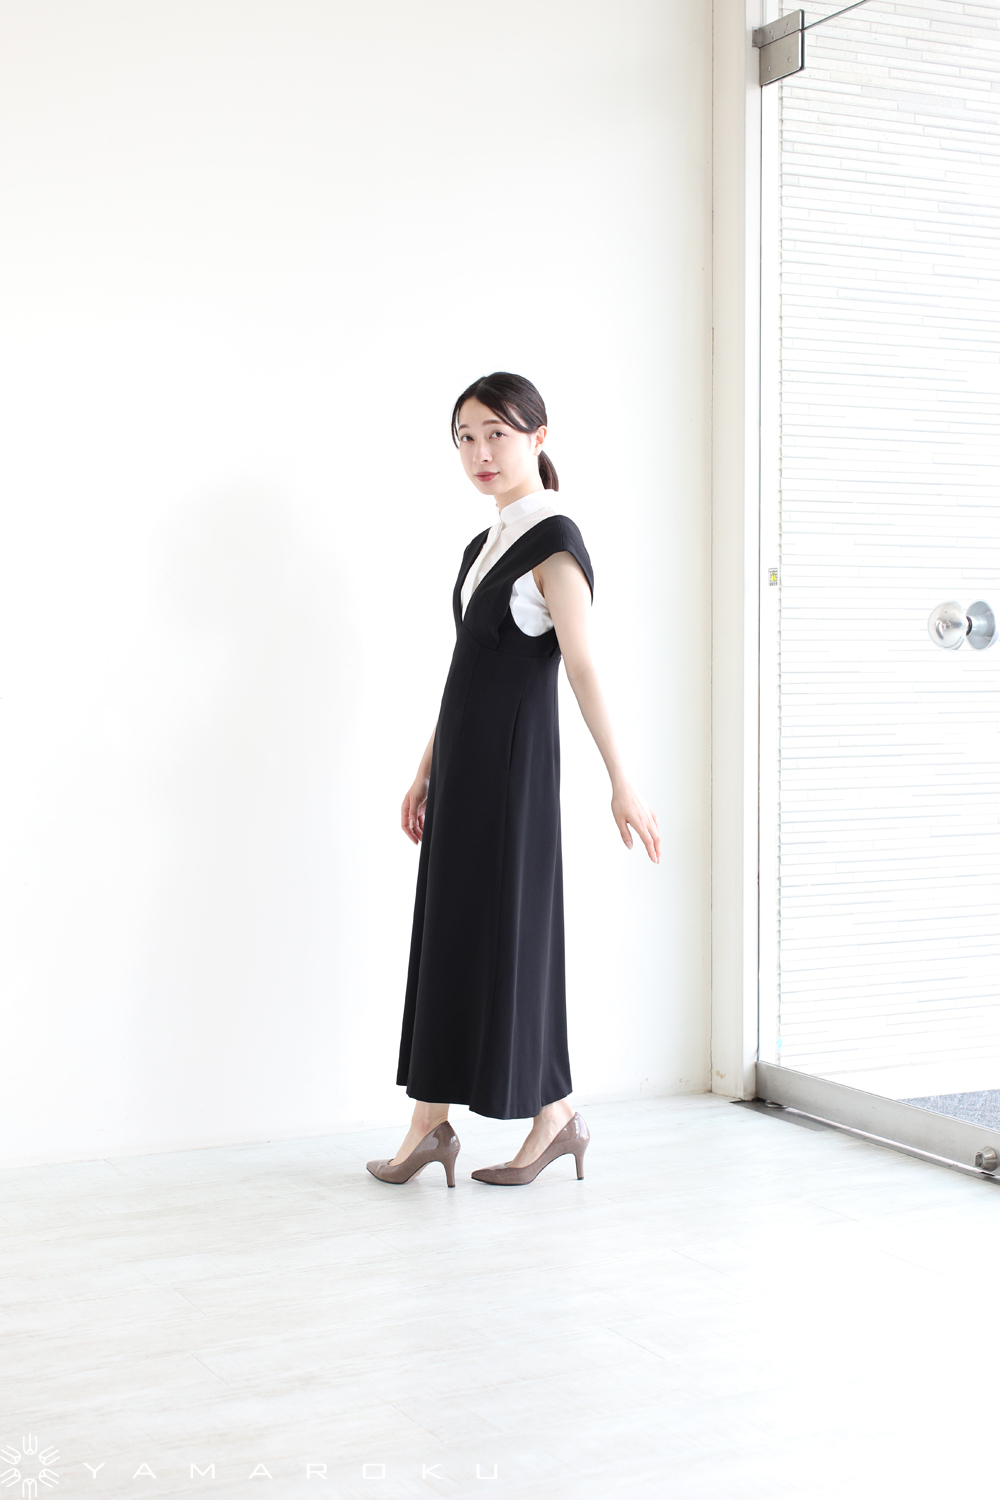 UNIQLO x Mame Kurogouchi 3D Knit Sleeveless Dress 458617 Japanese Size S-L  Japan